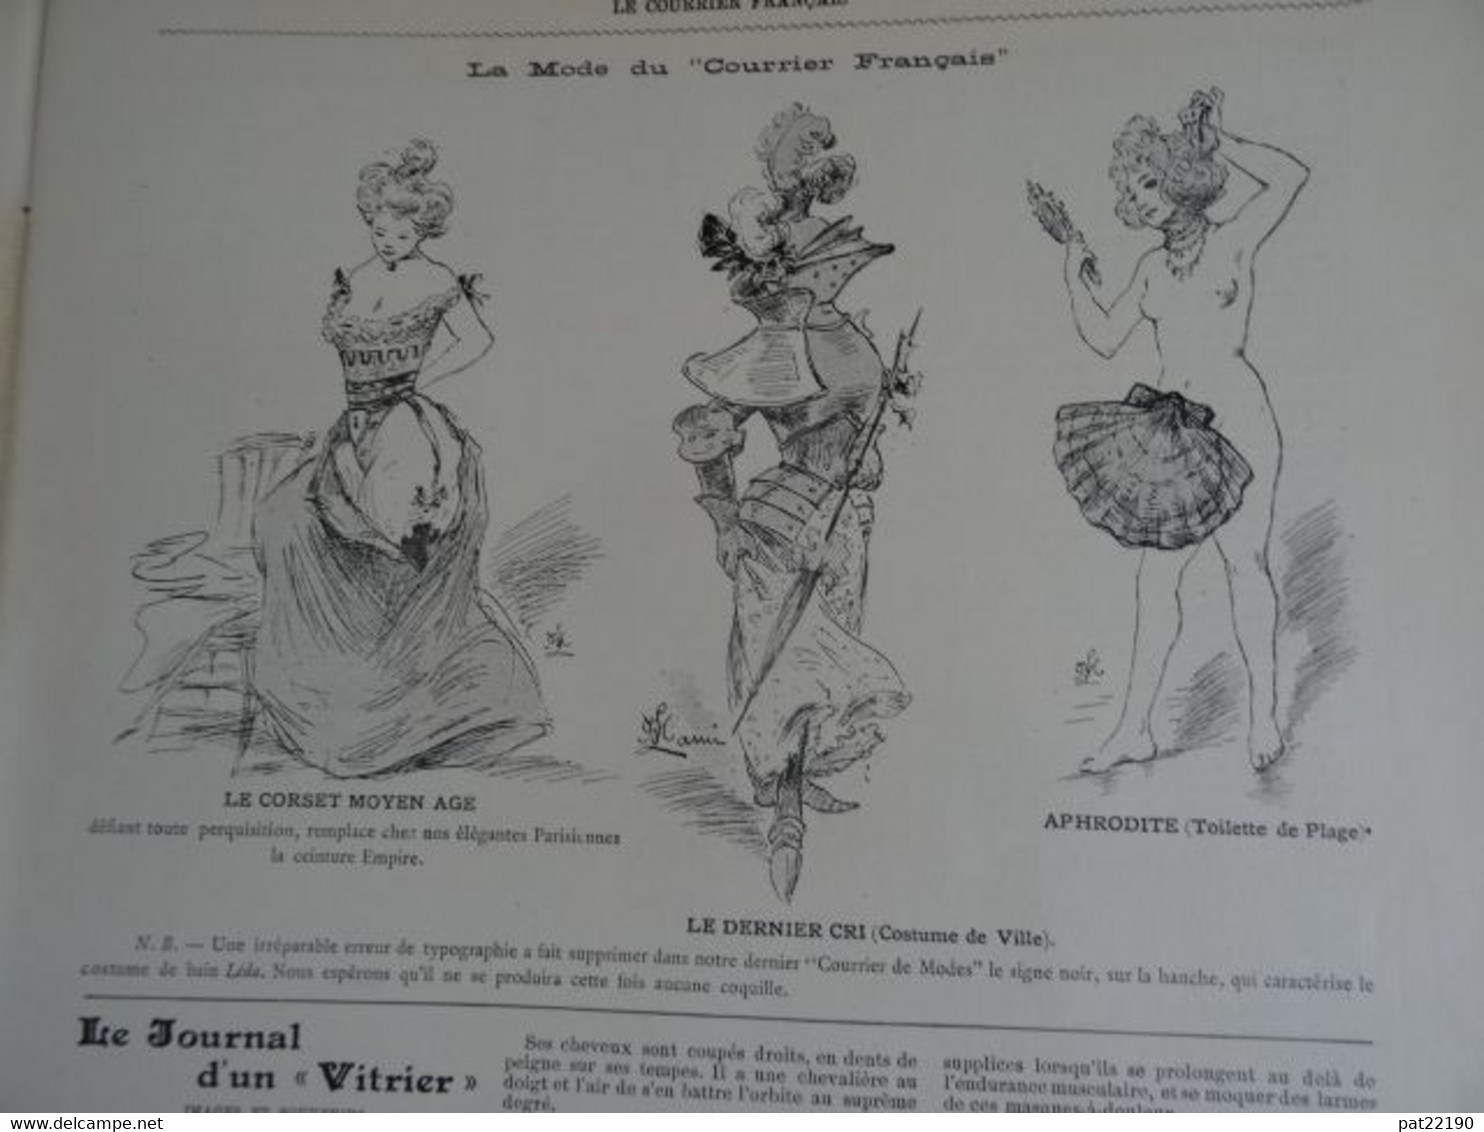 Revue le courrier Français 1899 Fort Chabrol menu mariage artiste Willette Montmartre Lami Auguste Baudoin Déroulède